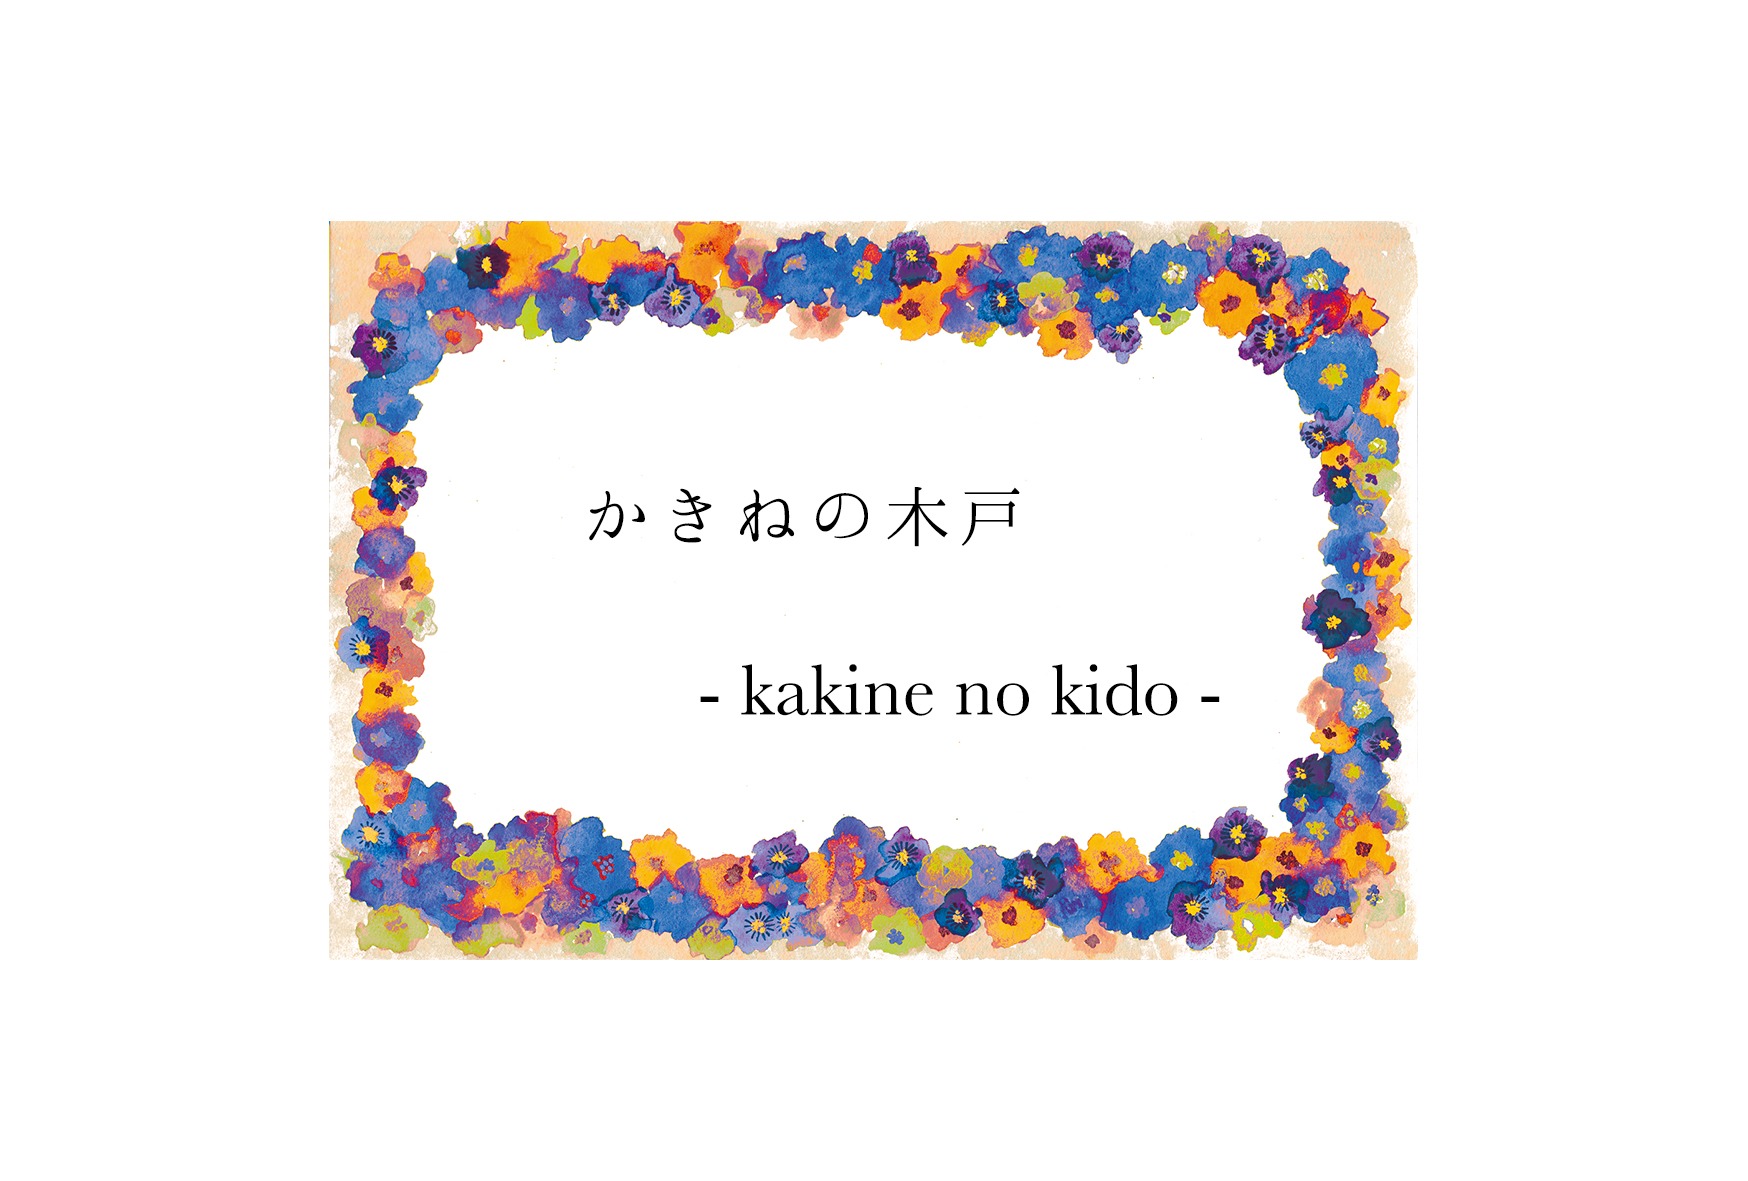 かきねの木戸 / kakine no kido